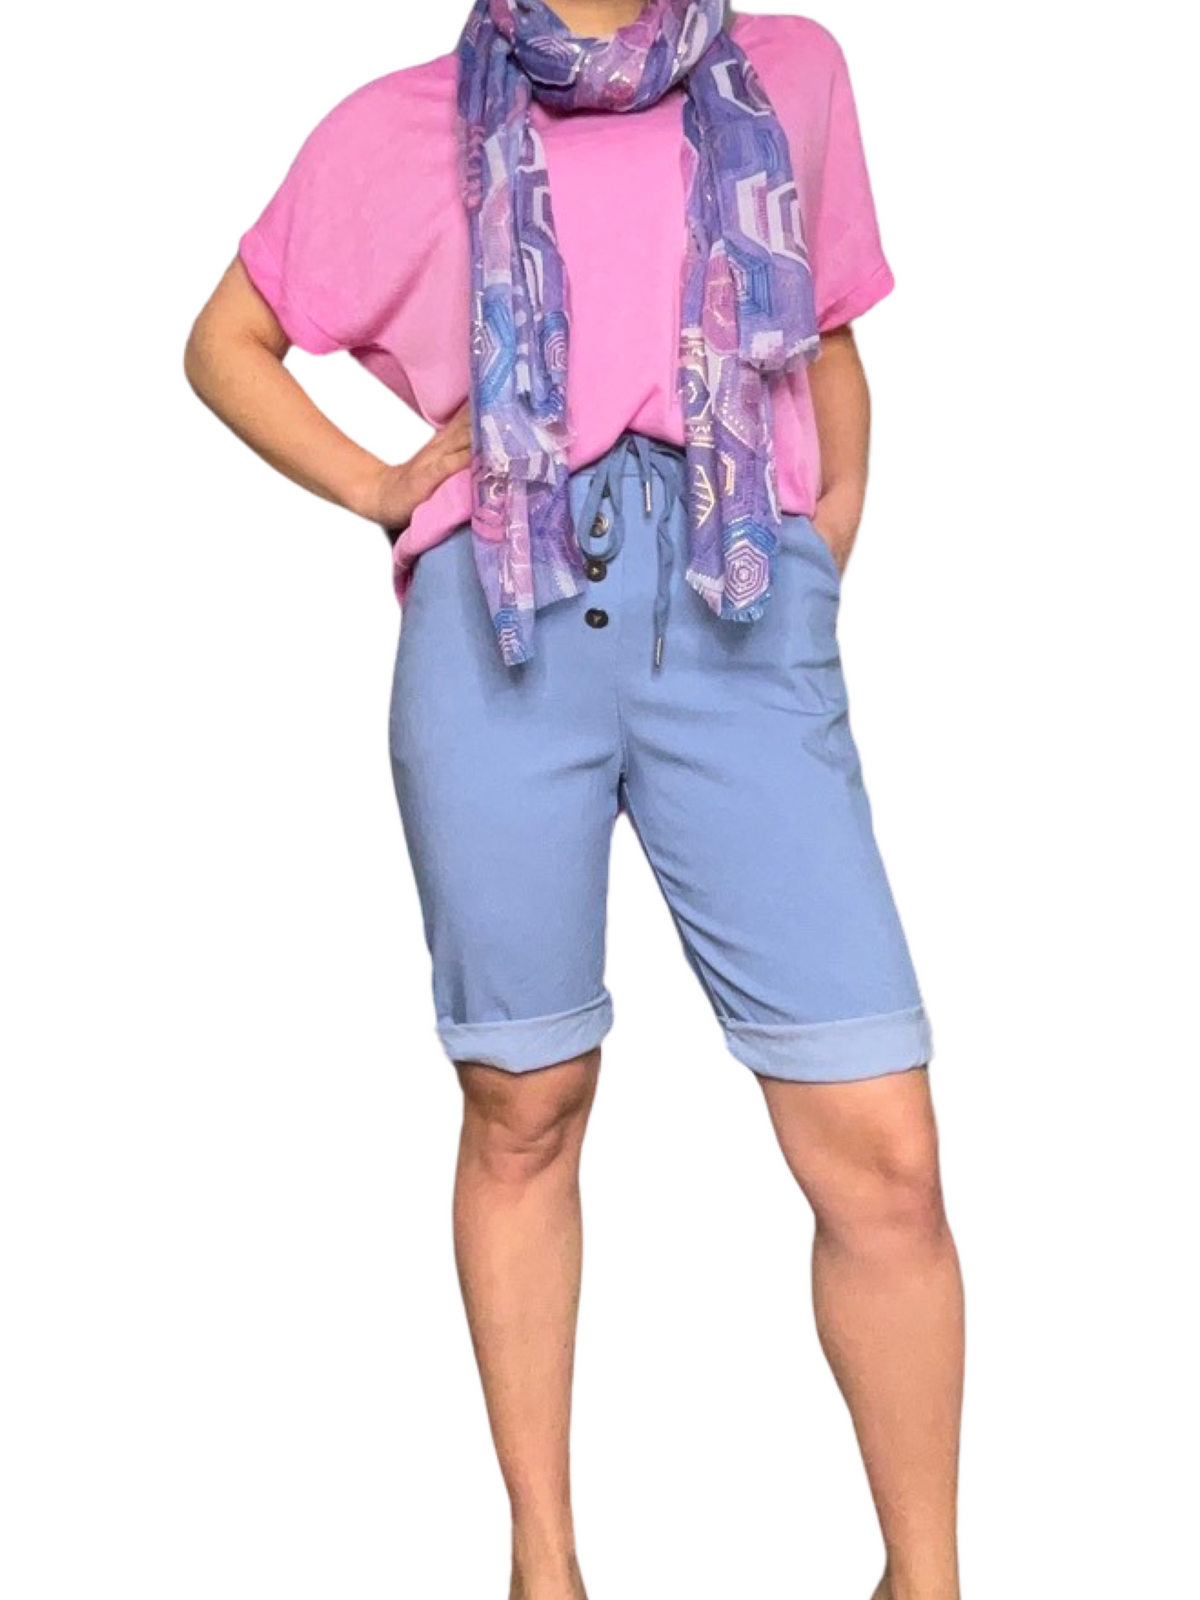 Bermuda bleu jean pour femme à taille élastique avec cordon et boutons avec t-shirt rose et foulard.